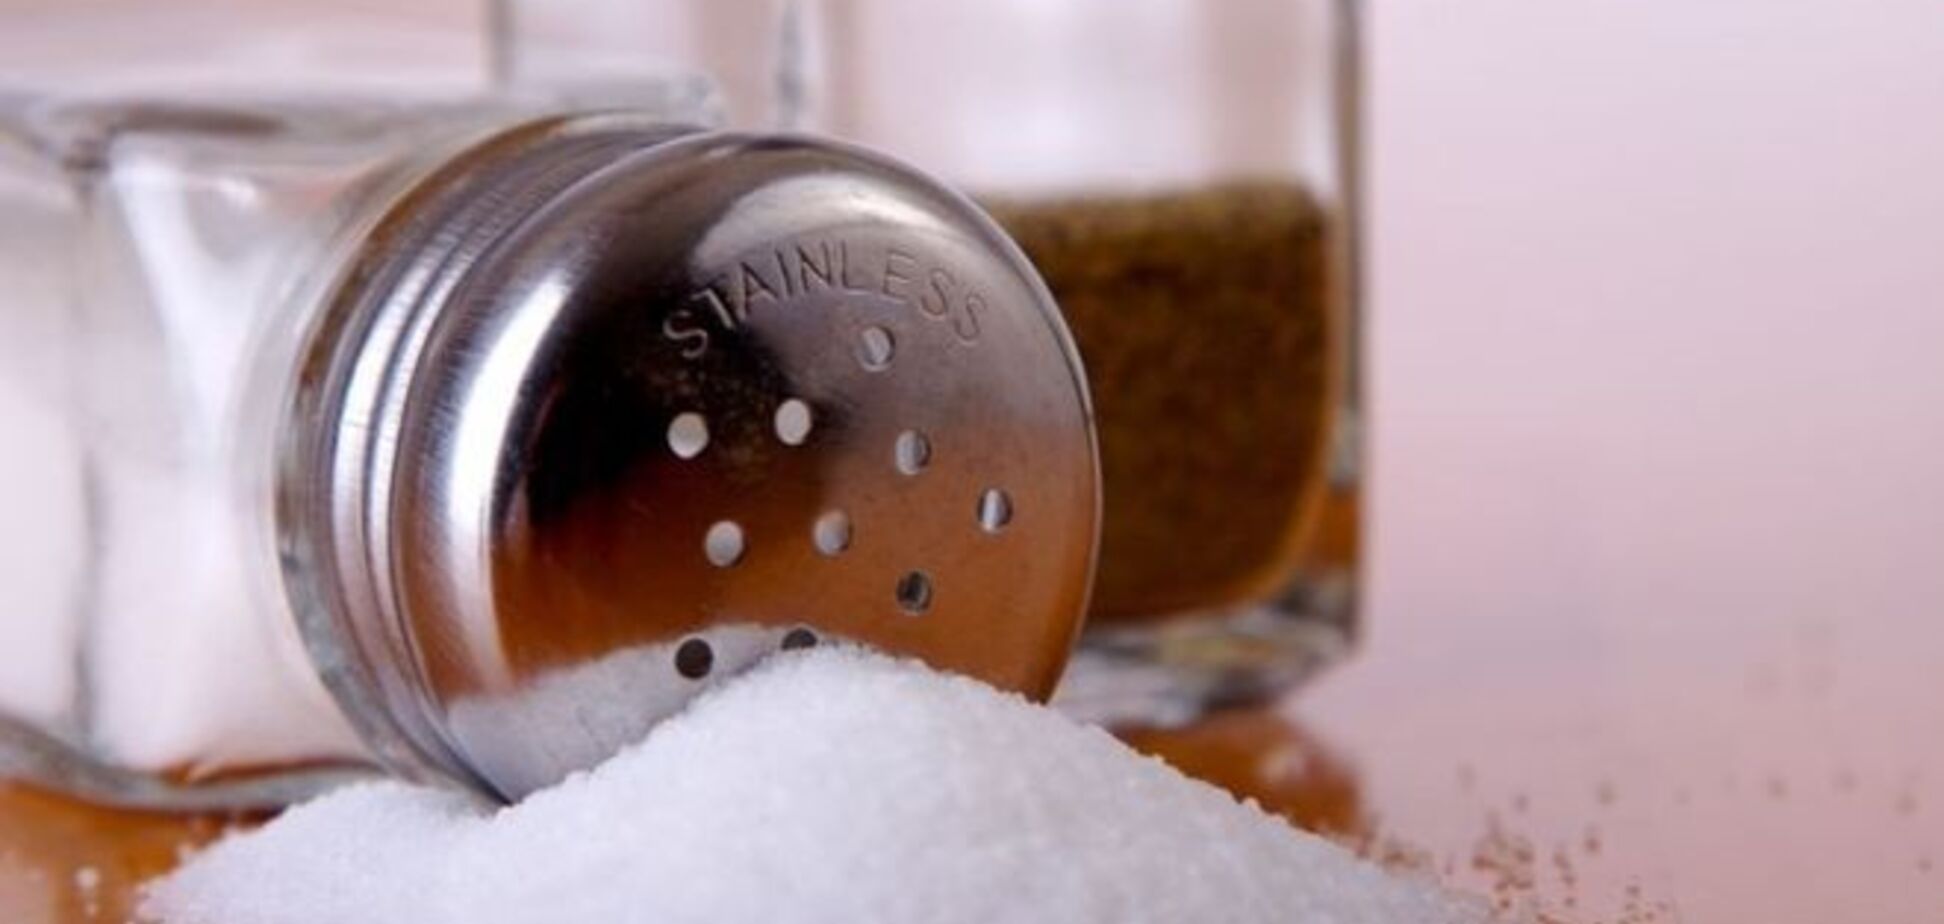 Эксперты рассказали, как отличить настоящие соль и сахар от подделки